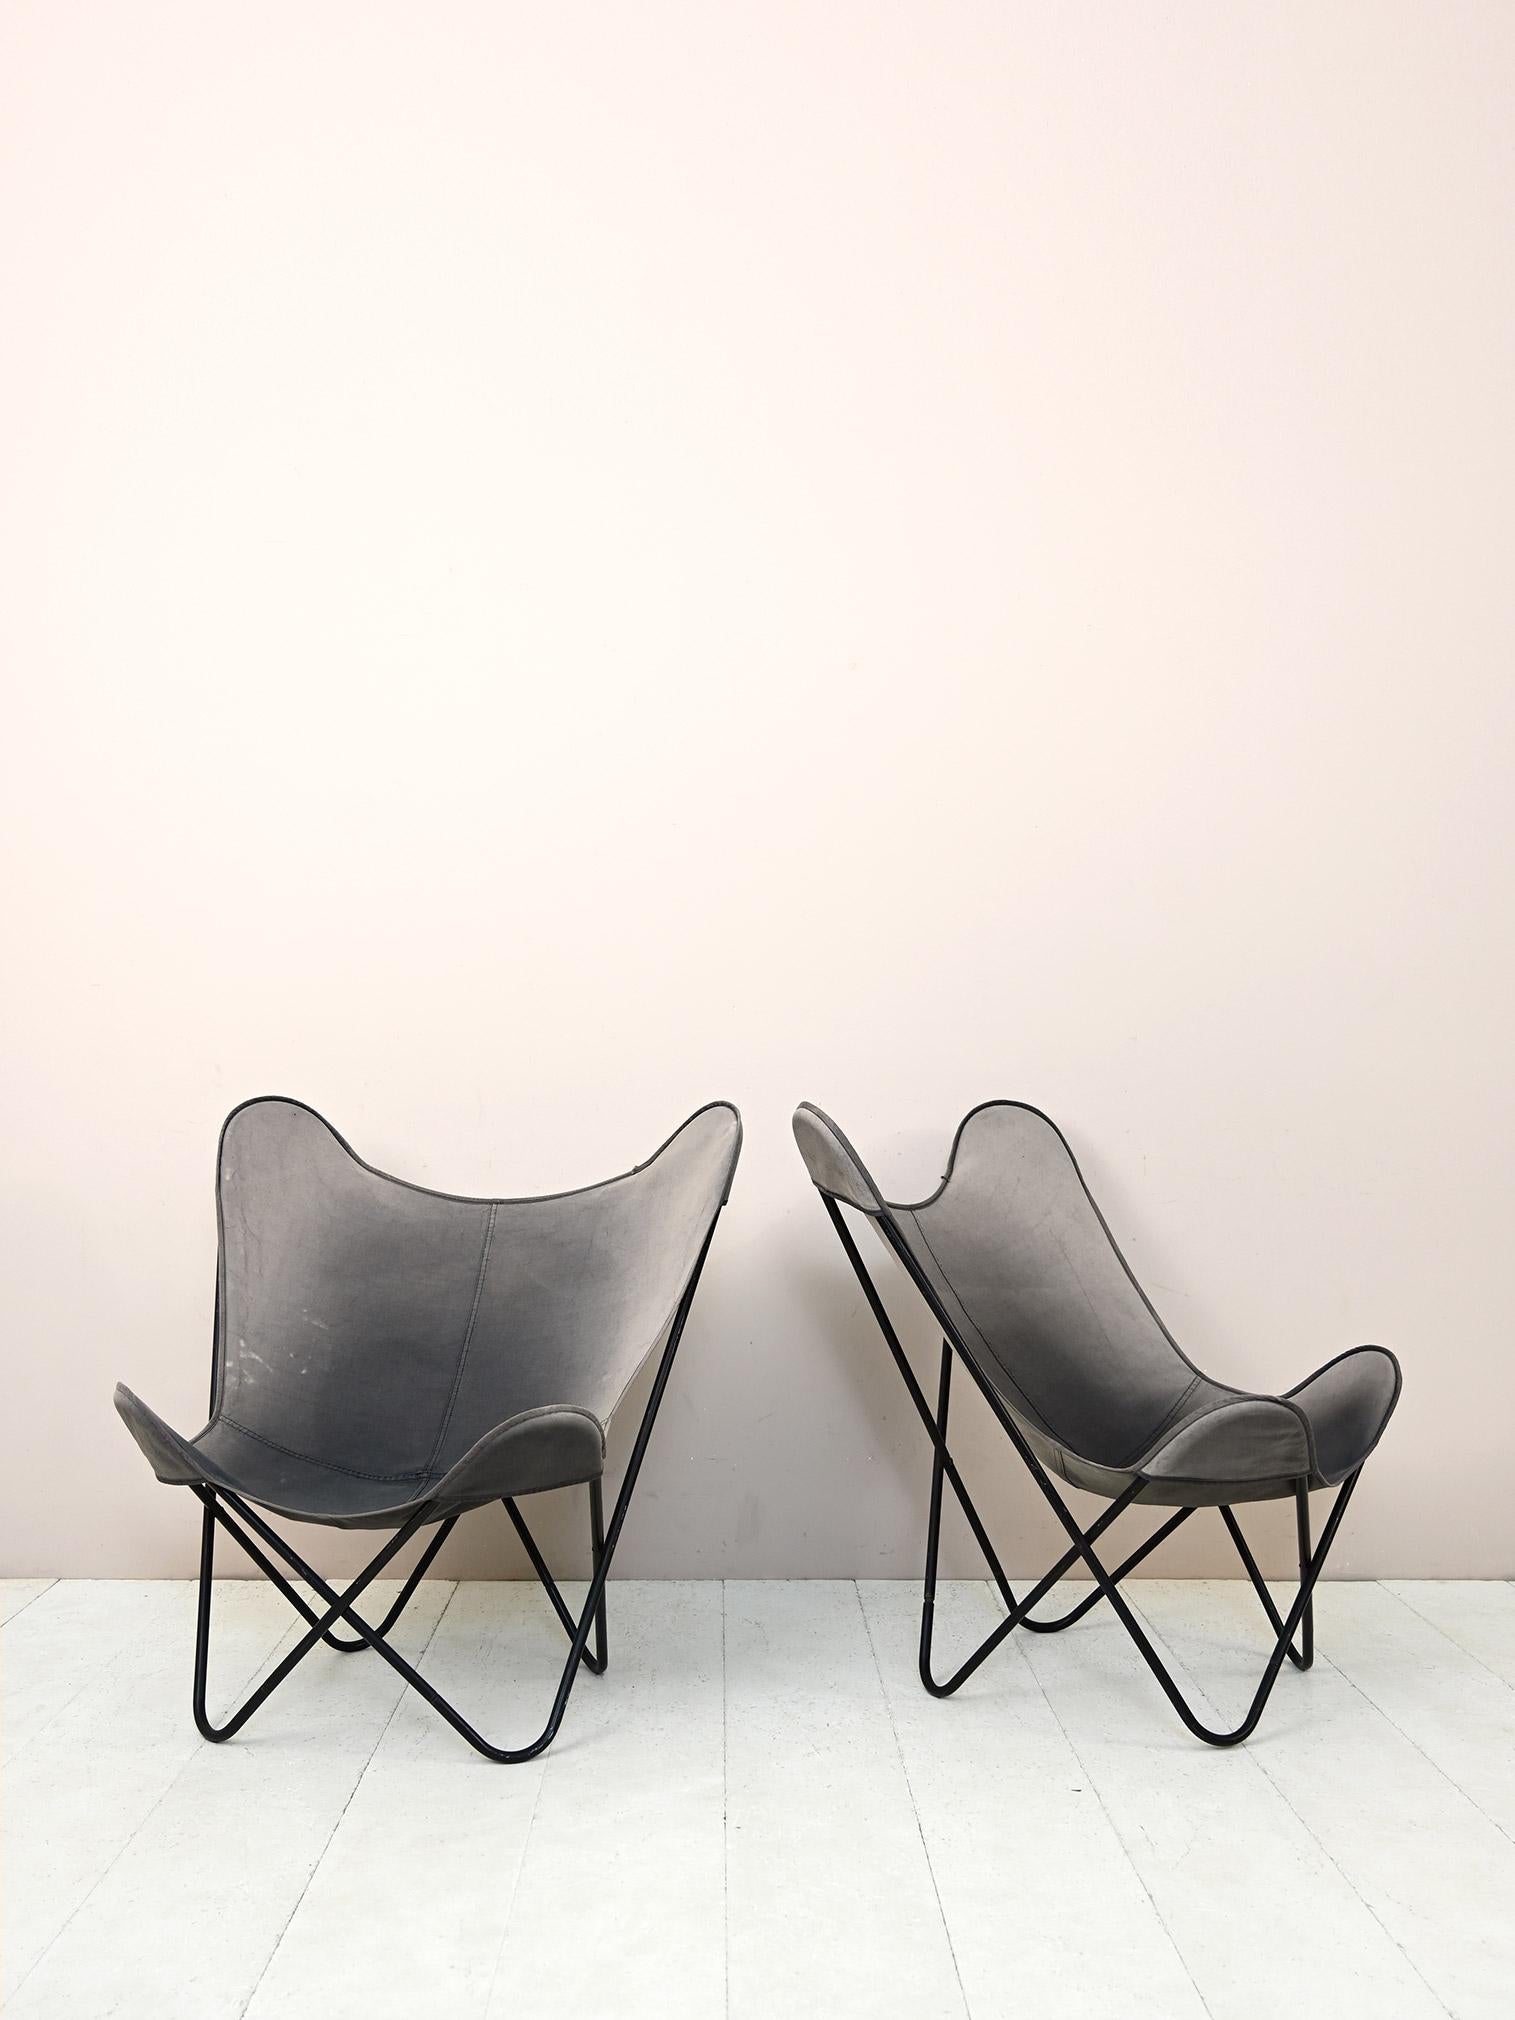 Chaises scandinaves originales en métal et tissu.

Ces chaises légères et modernes se composent d'une base en métal noir sur laquelle repose le tissu qui sert d'assise.
Idéal pour l'intérieur et le jardin d'hiver. Ils donneront du caractère à la